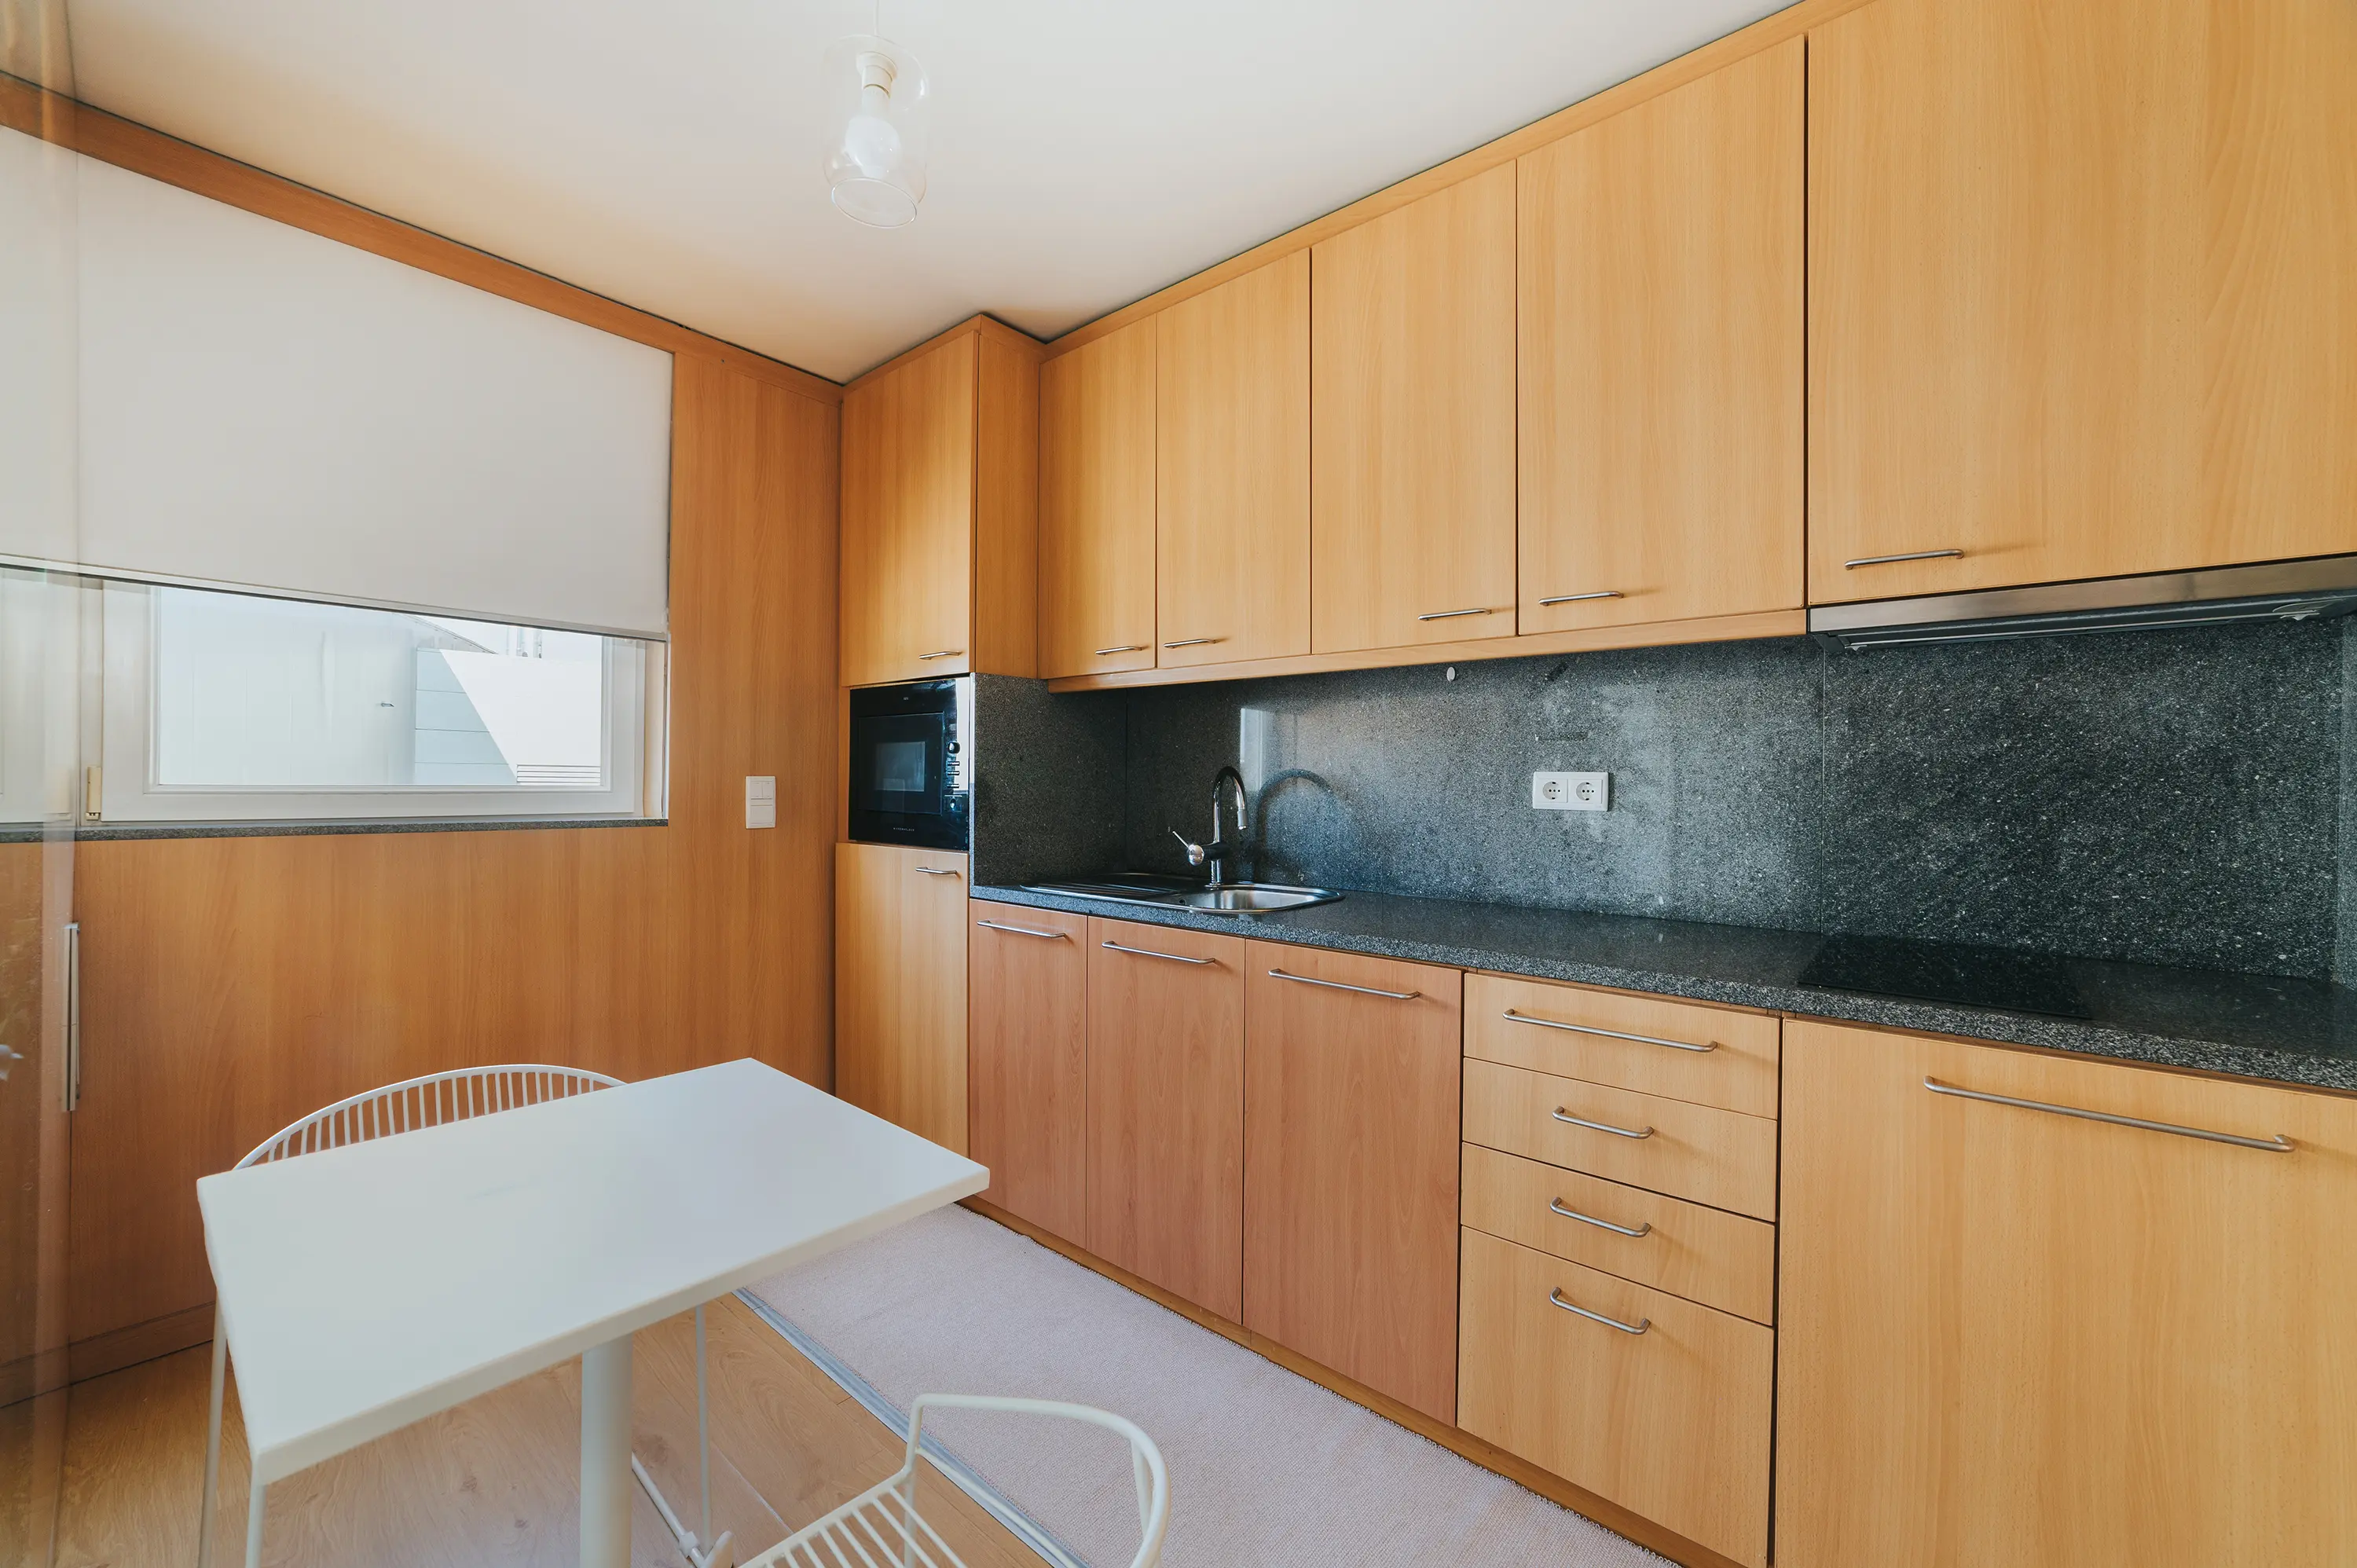 Para mostrar espaços pequenos como esta cozinha, recomendamos um serviço de fotografia imobiliária profissional